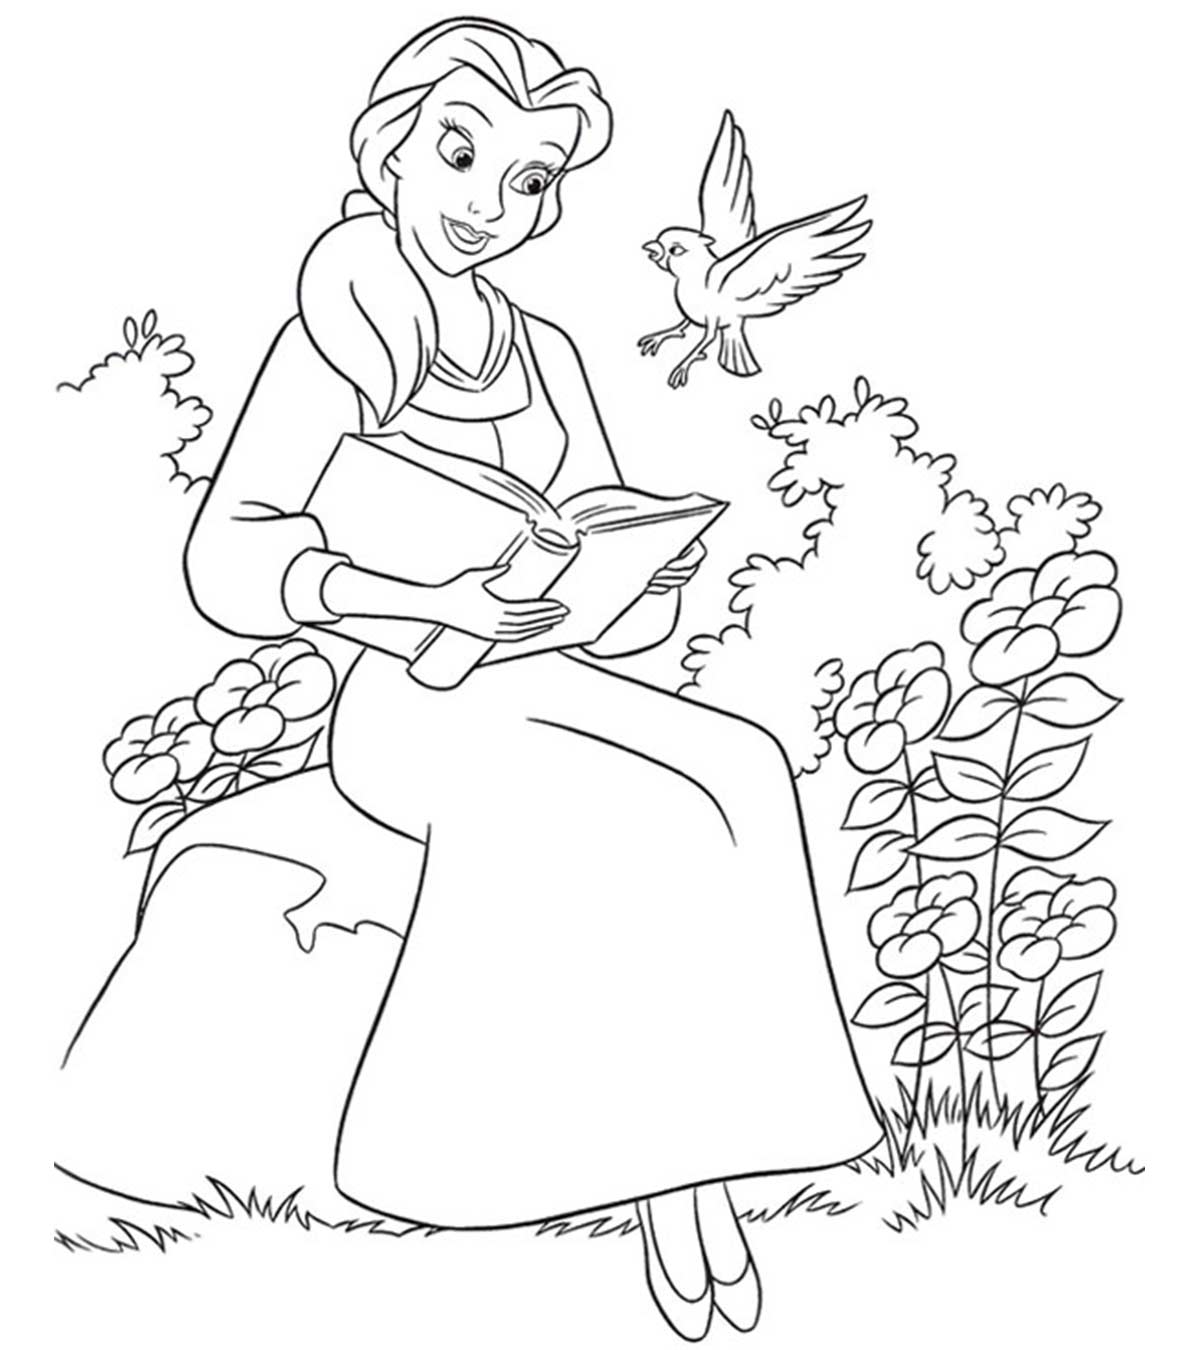 Belle sta leggendo il libro La bella e la bestia